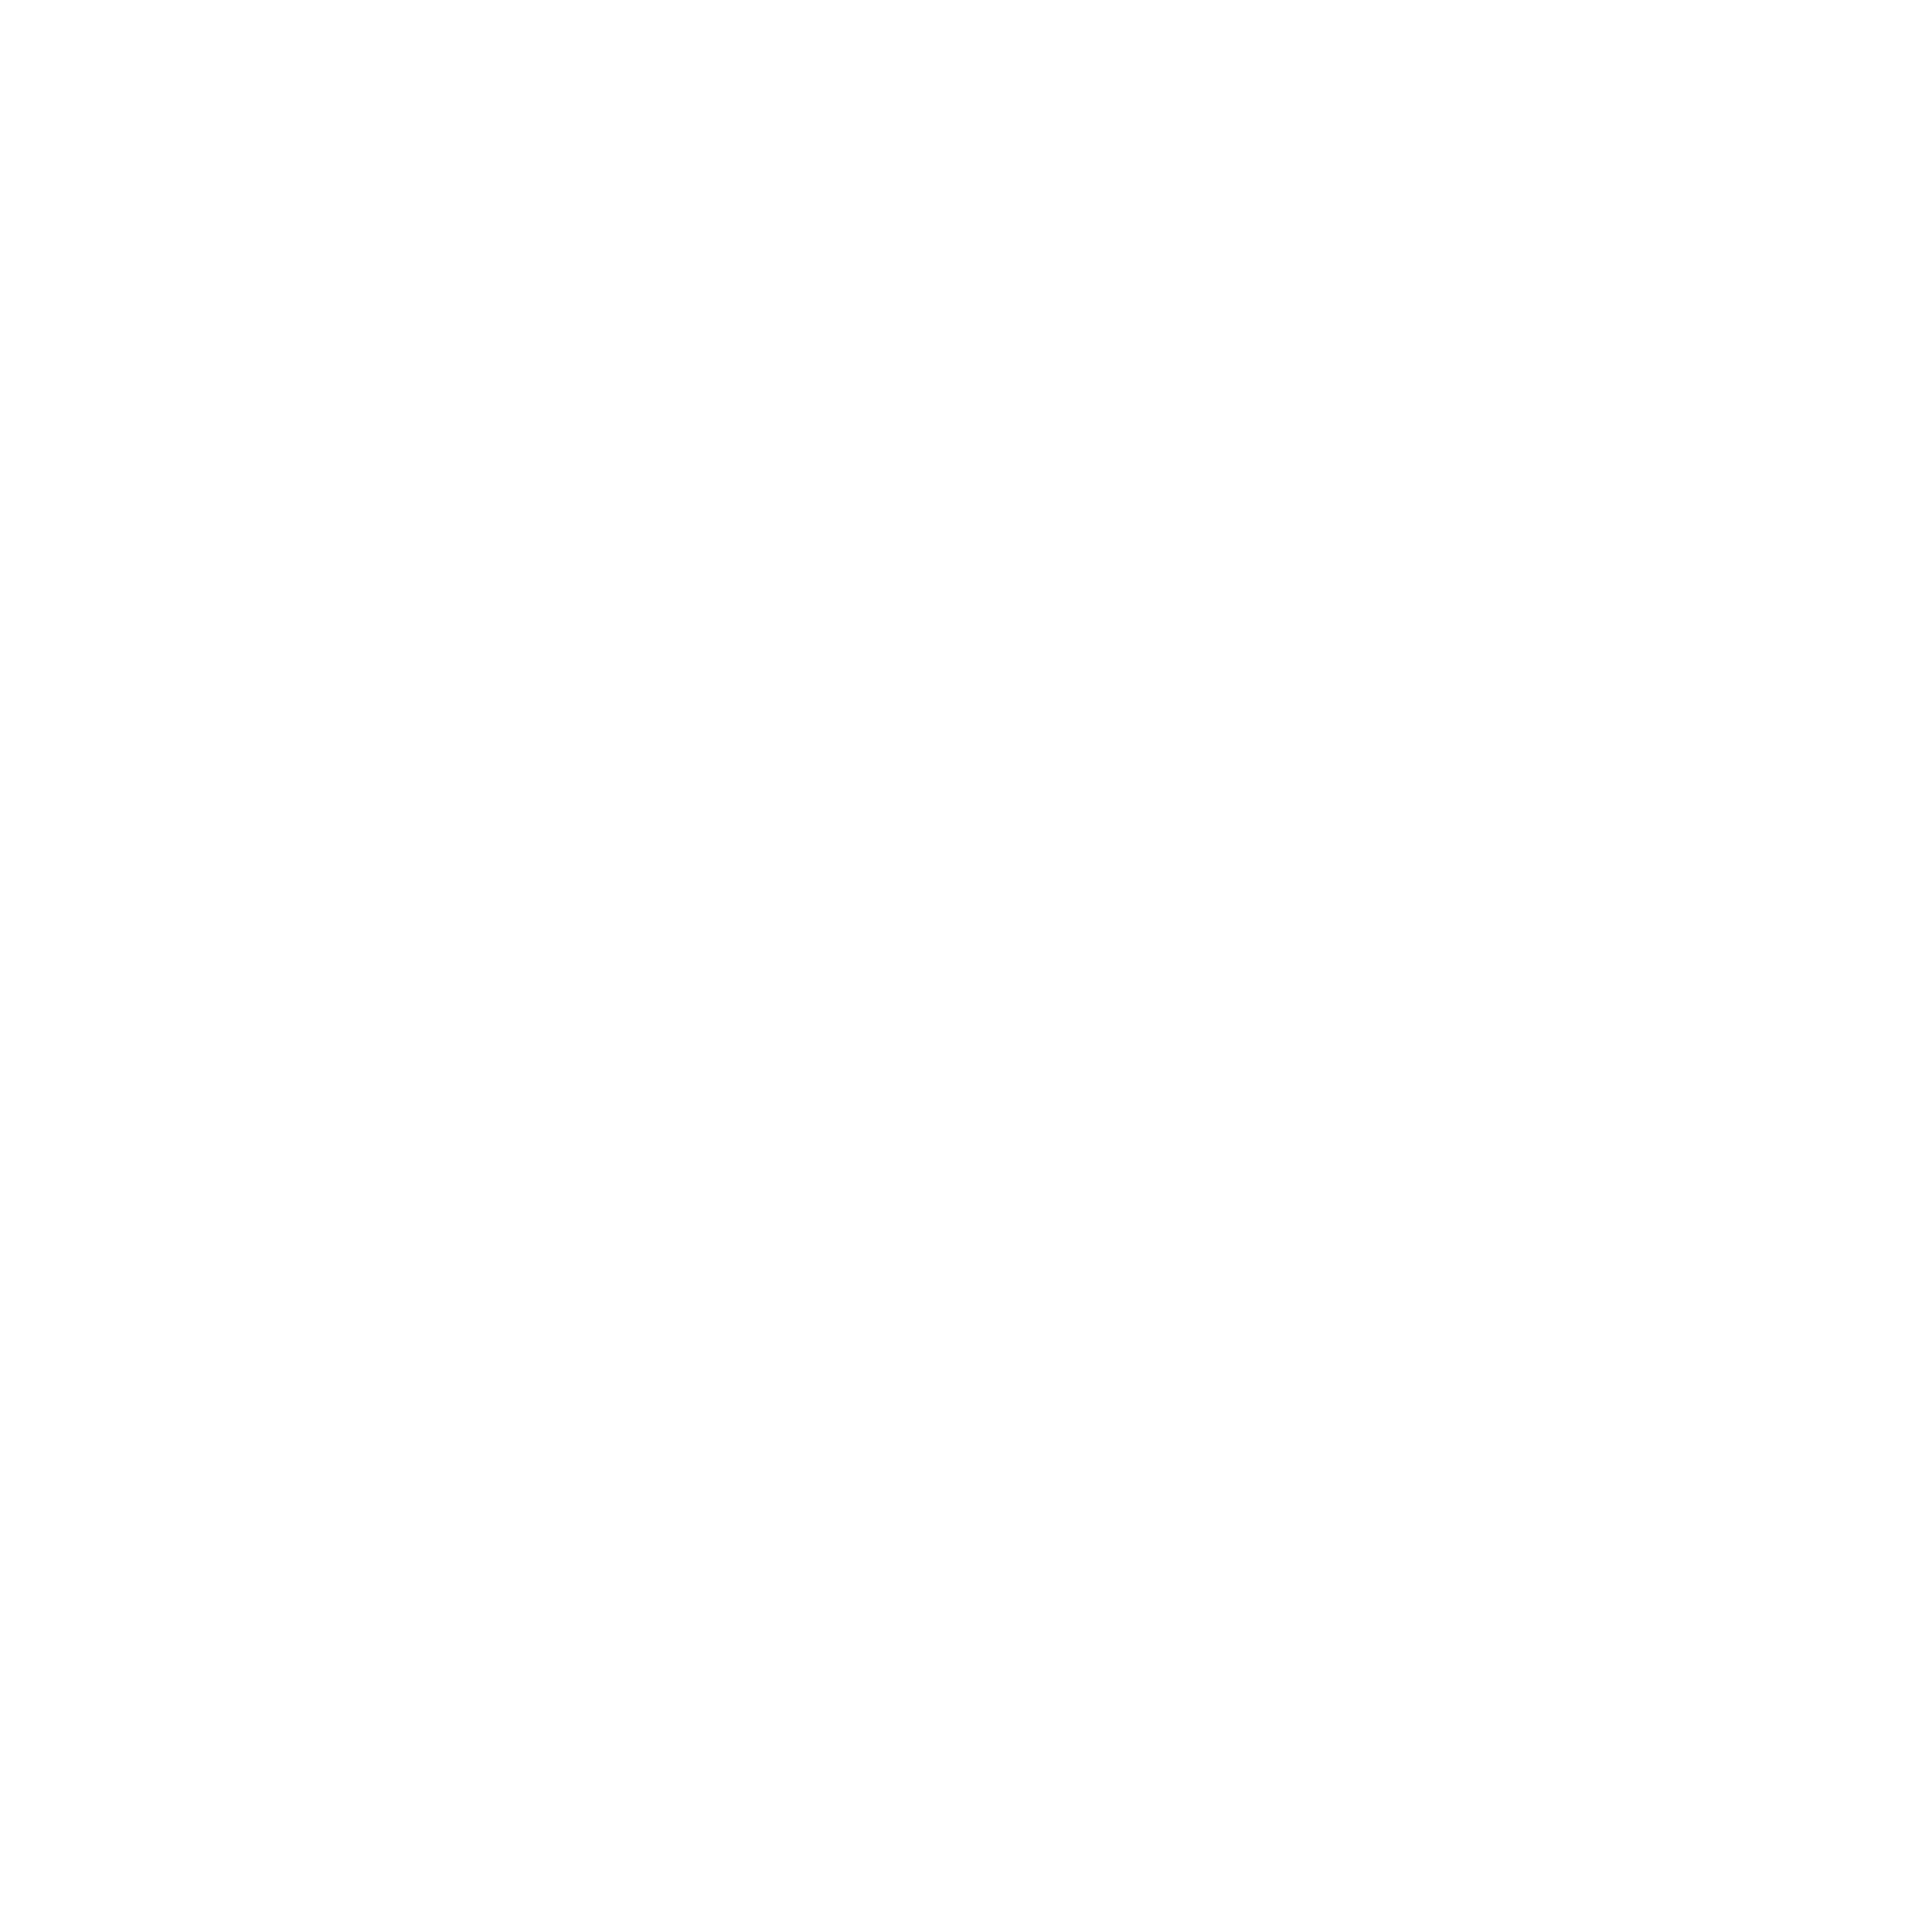 11 X 17, Inc., Manufacturing